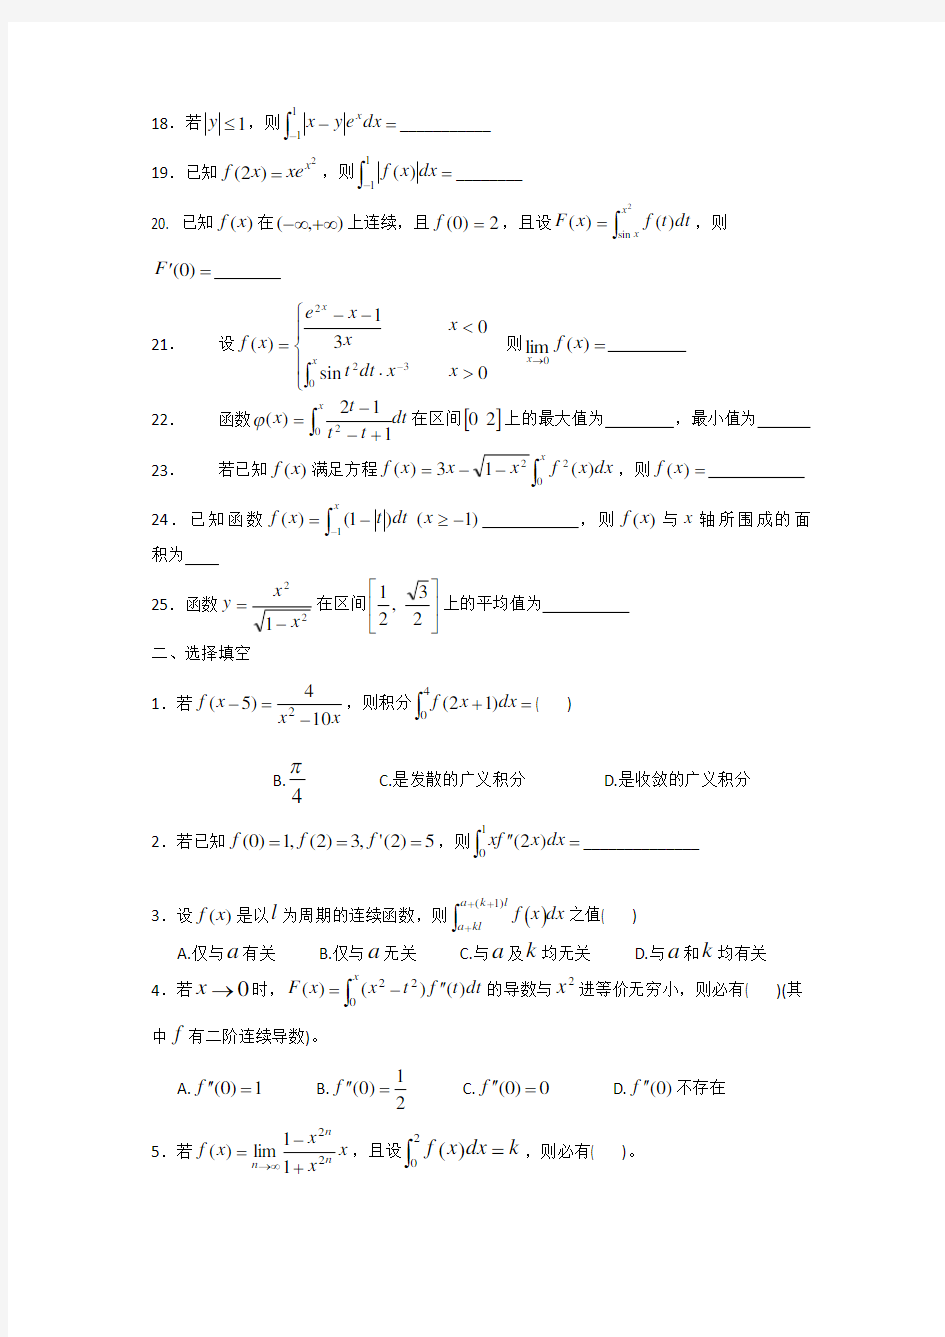 数学分析课本(华师大三版)-习题及答案第九章